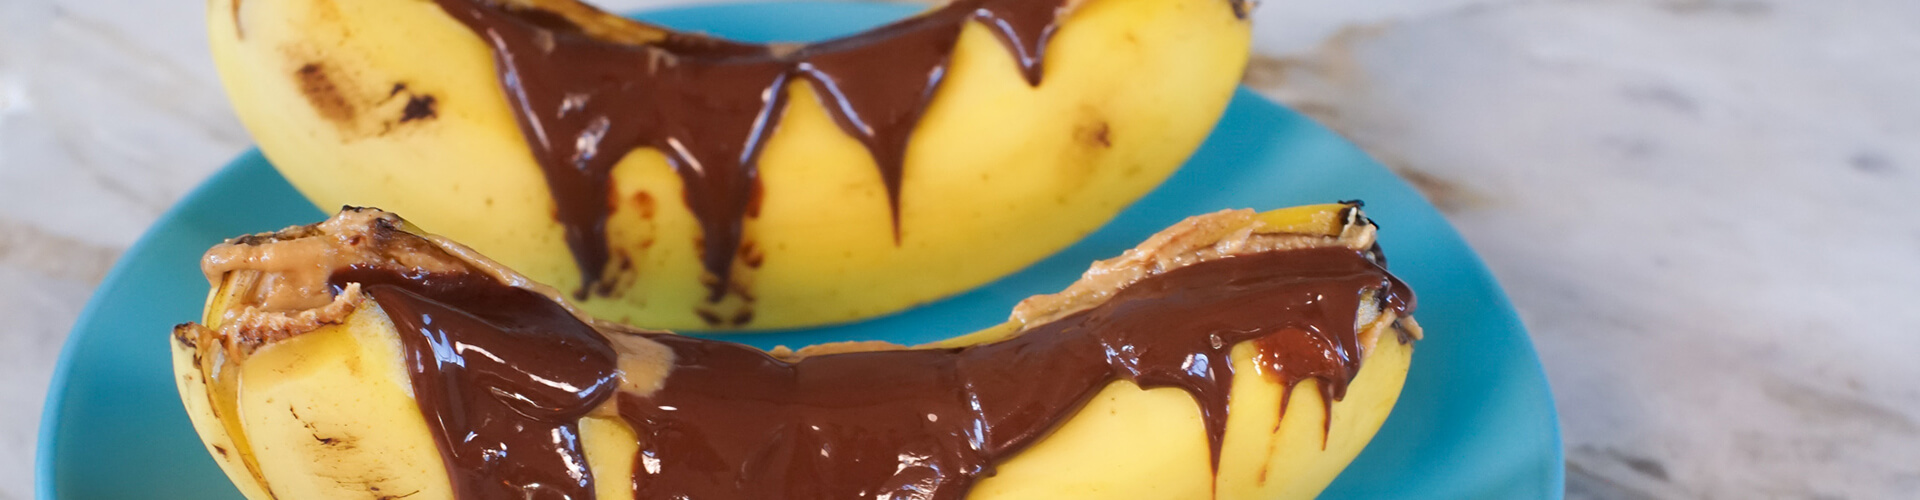 Duas banana split com pasta de amendoim e chocolift em um prato azul.